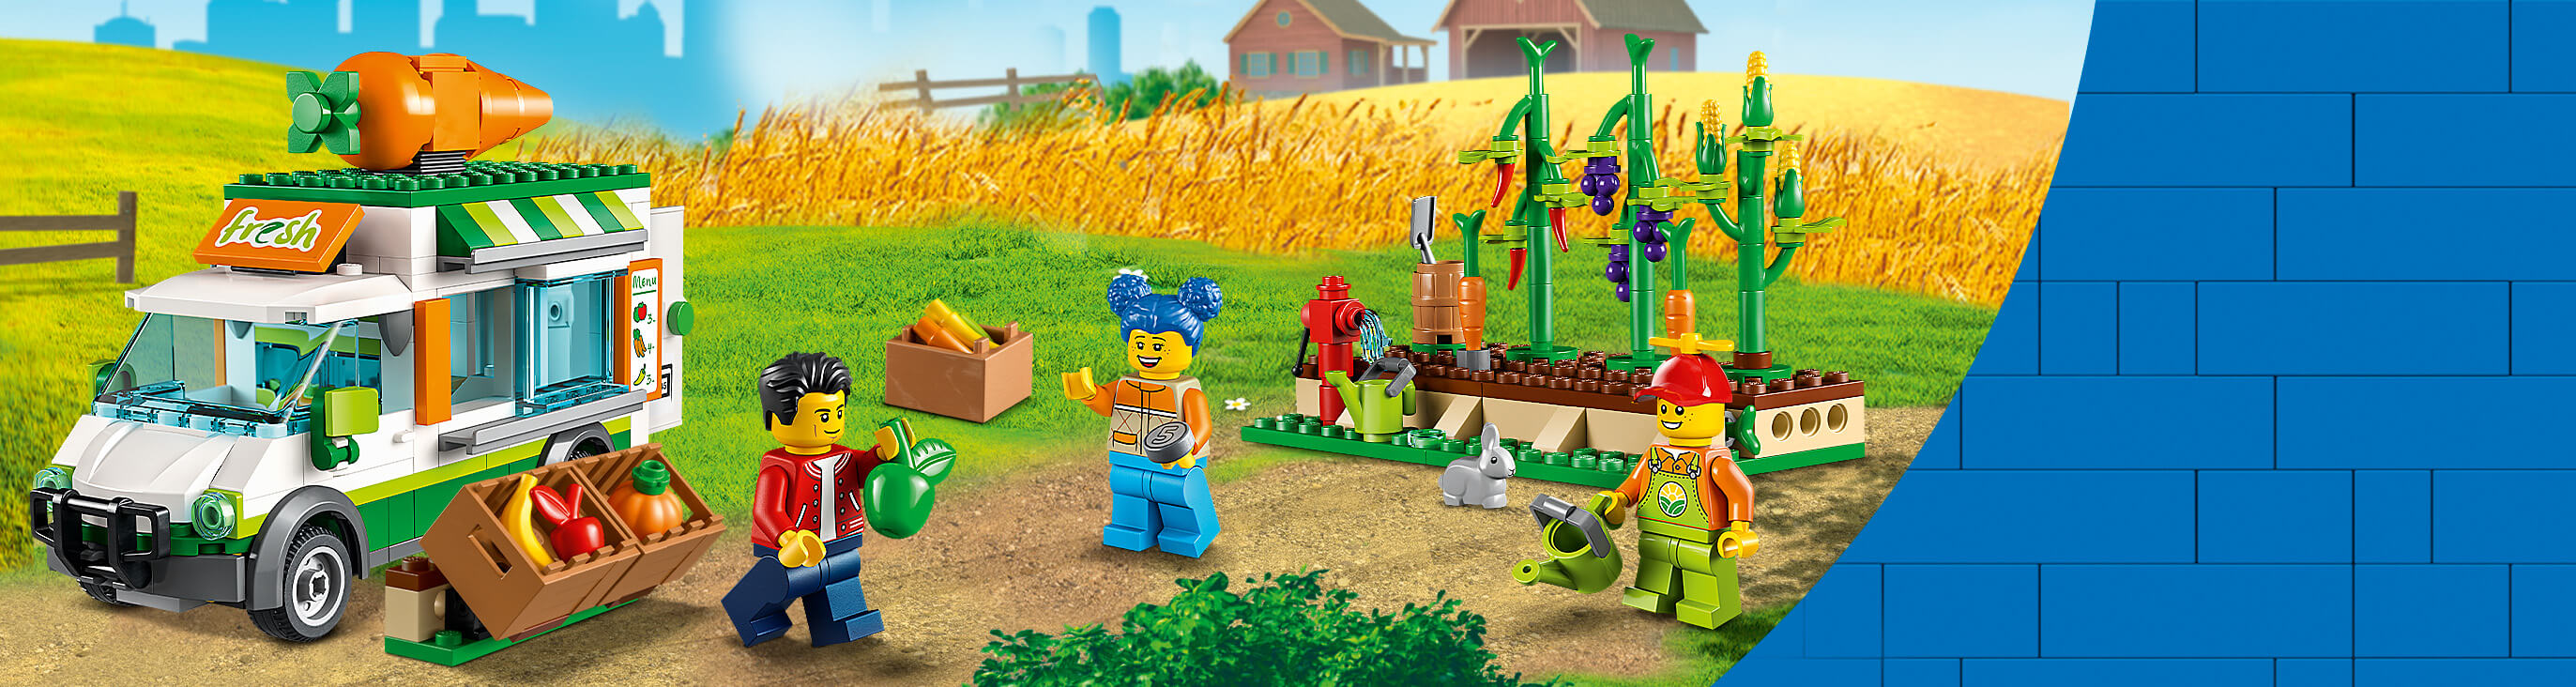 LEGO® City - Construye divertidas con tus LEGO®